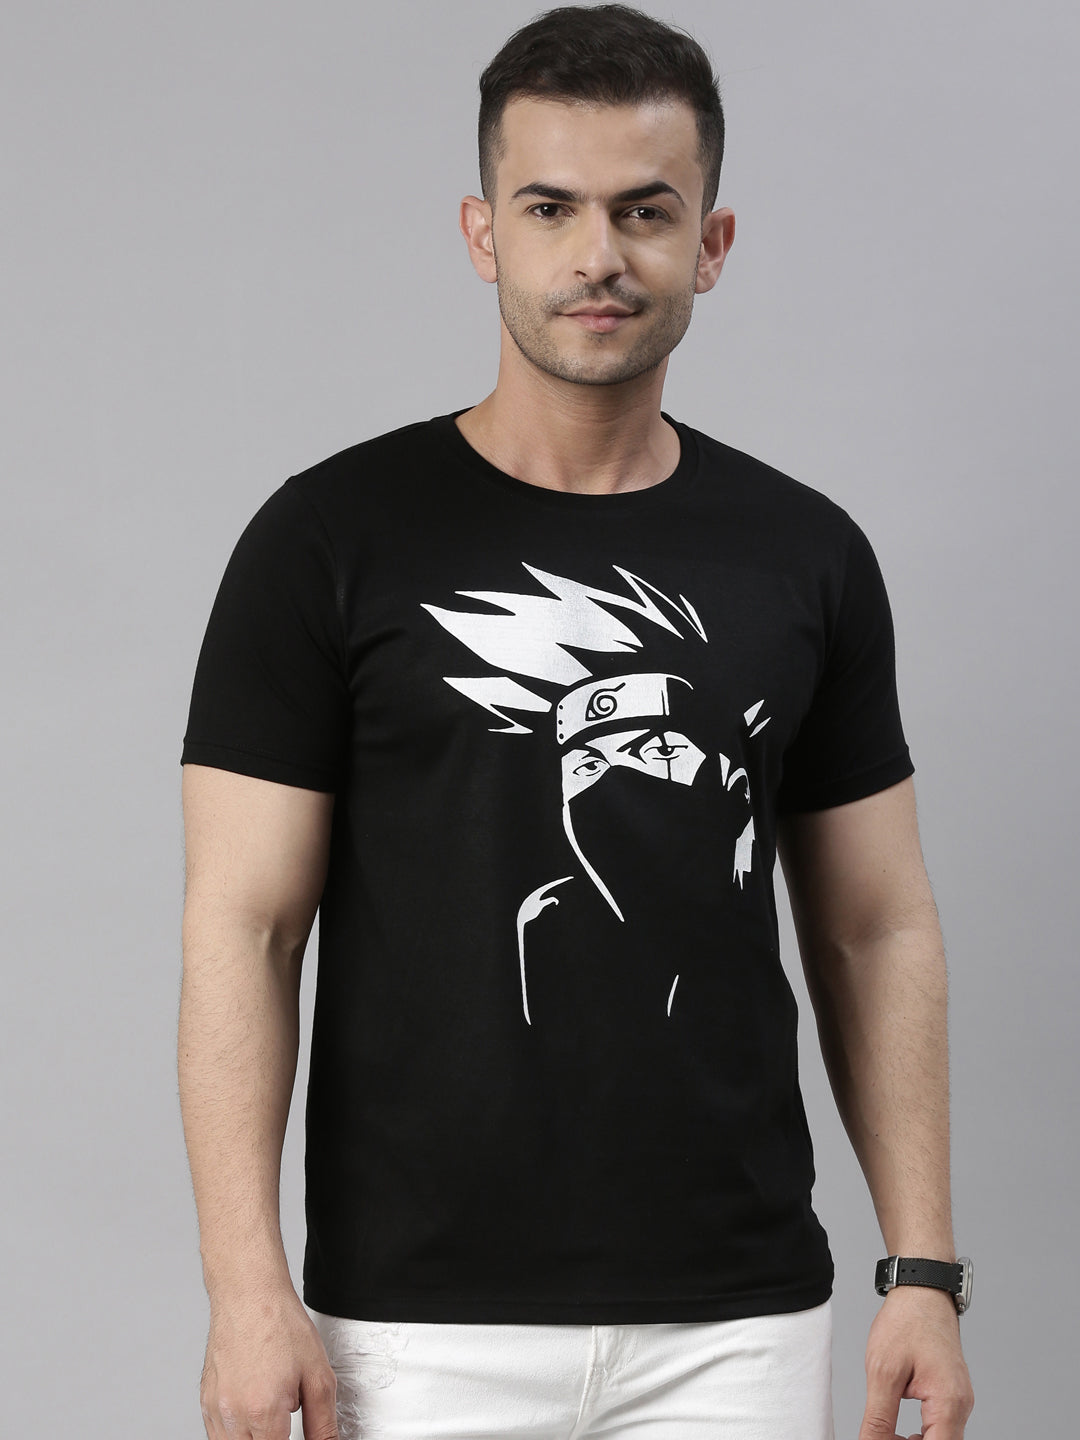 Hatake Kakashi - Naruto Black Anime T-Shirt Graphic T-Shirts Bushirt   